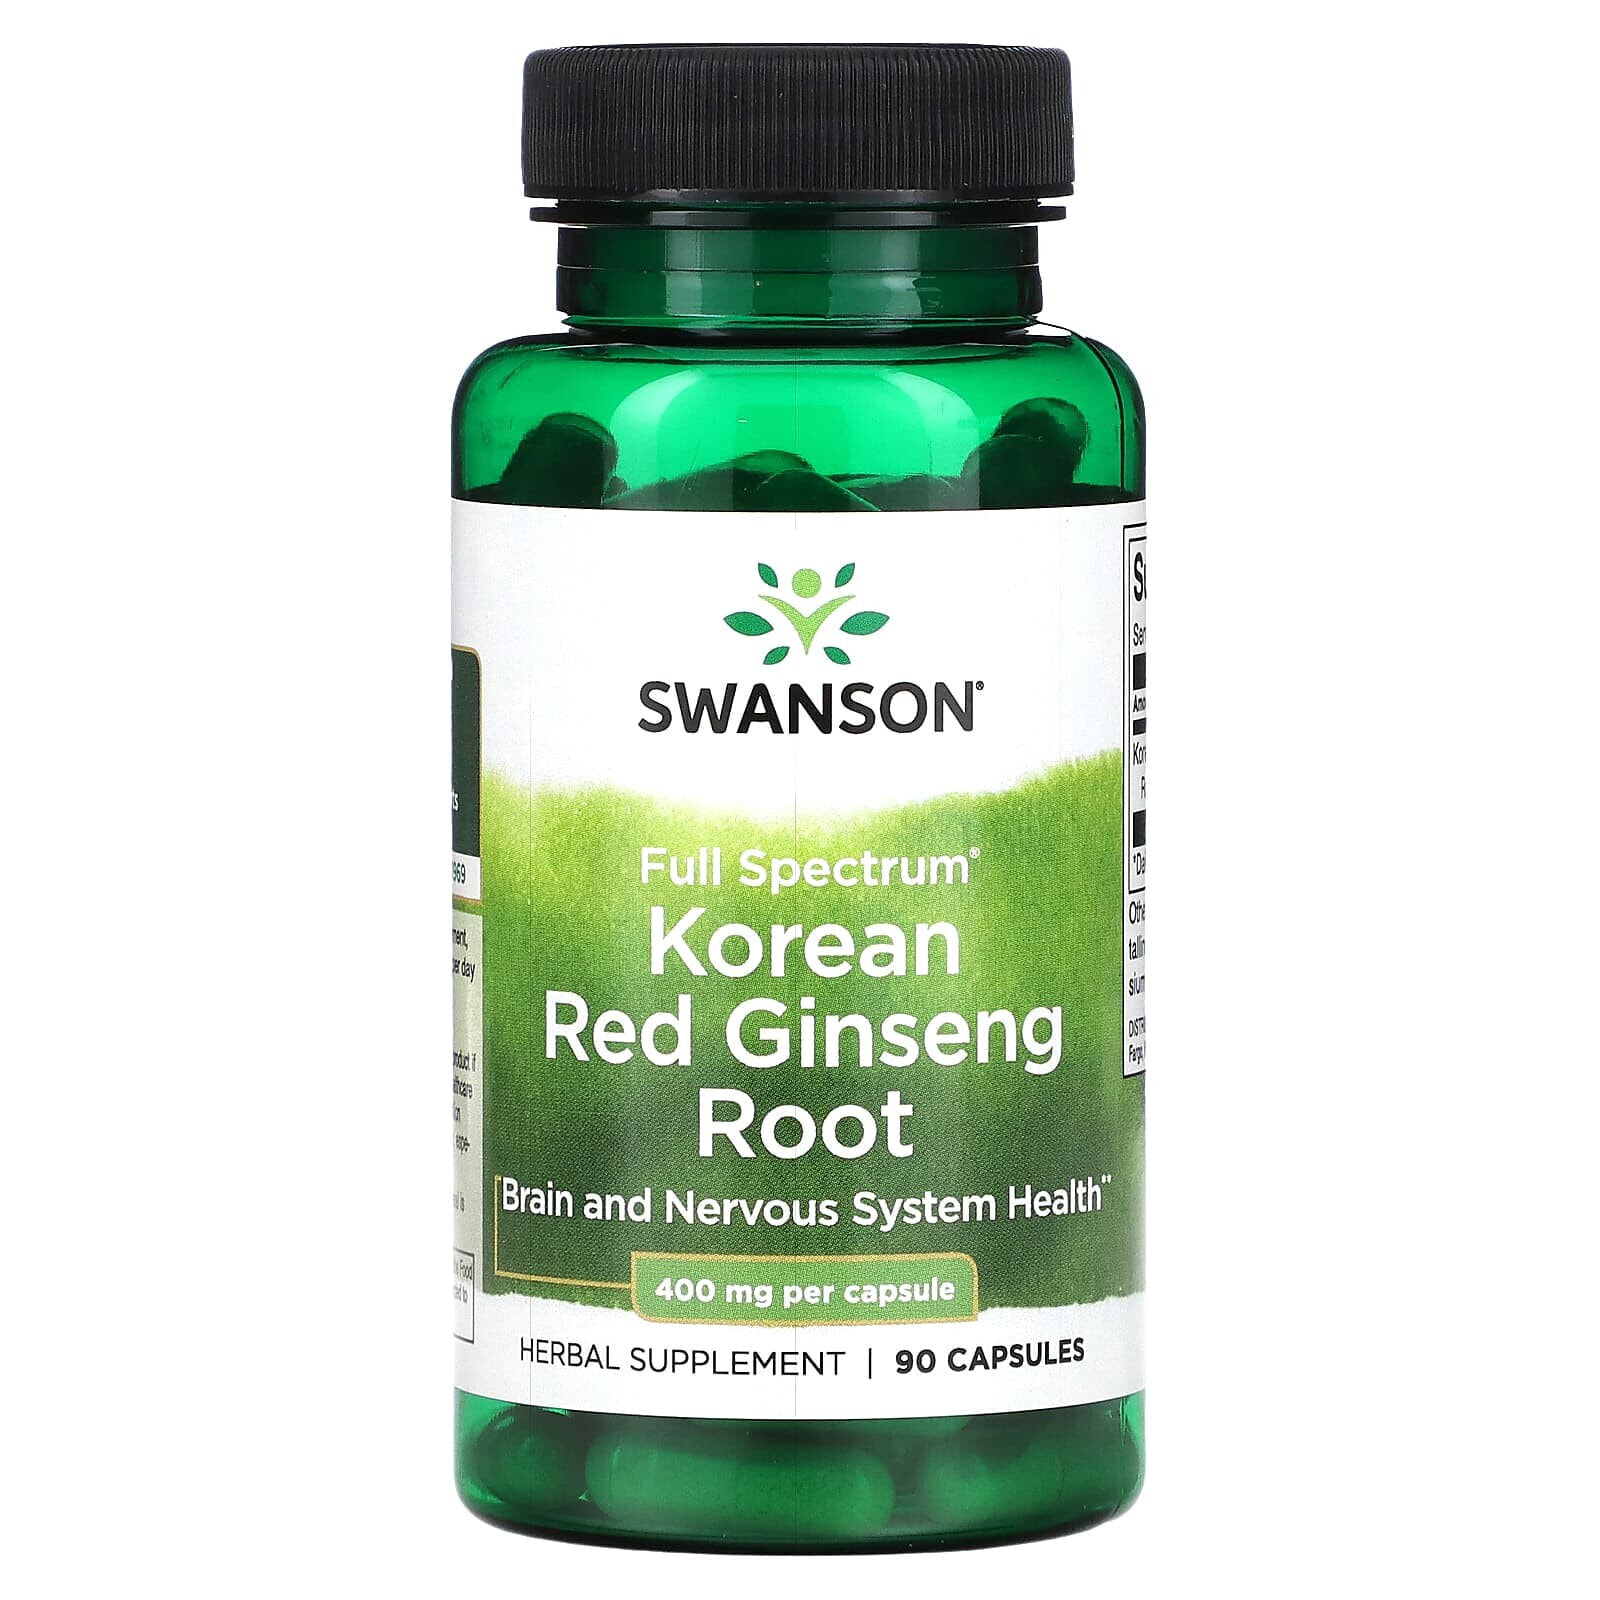 Full Spectrum Korean Red Ginseng Root, 400 mg, 90 Capsules